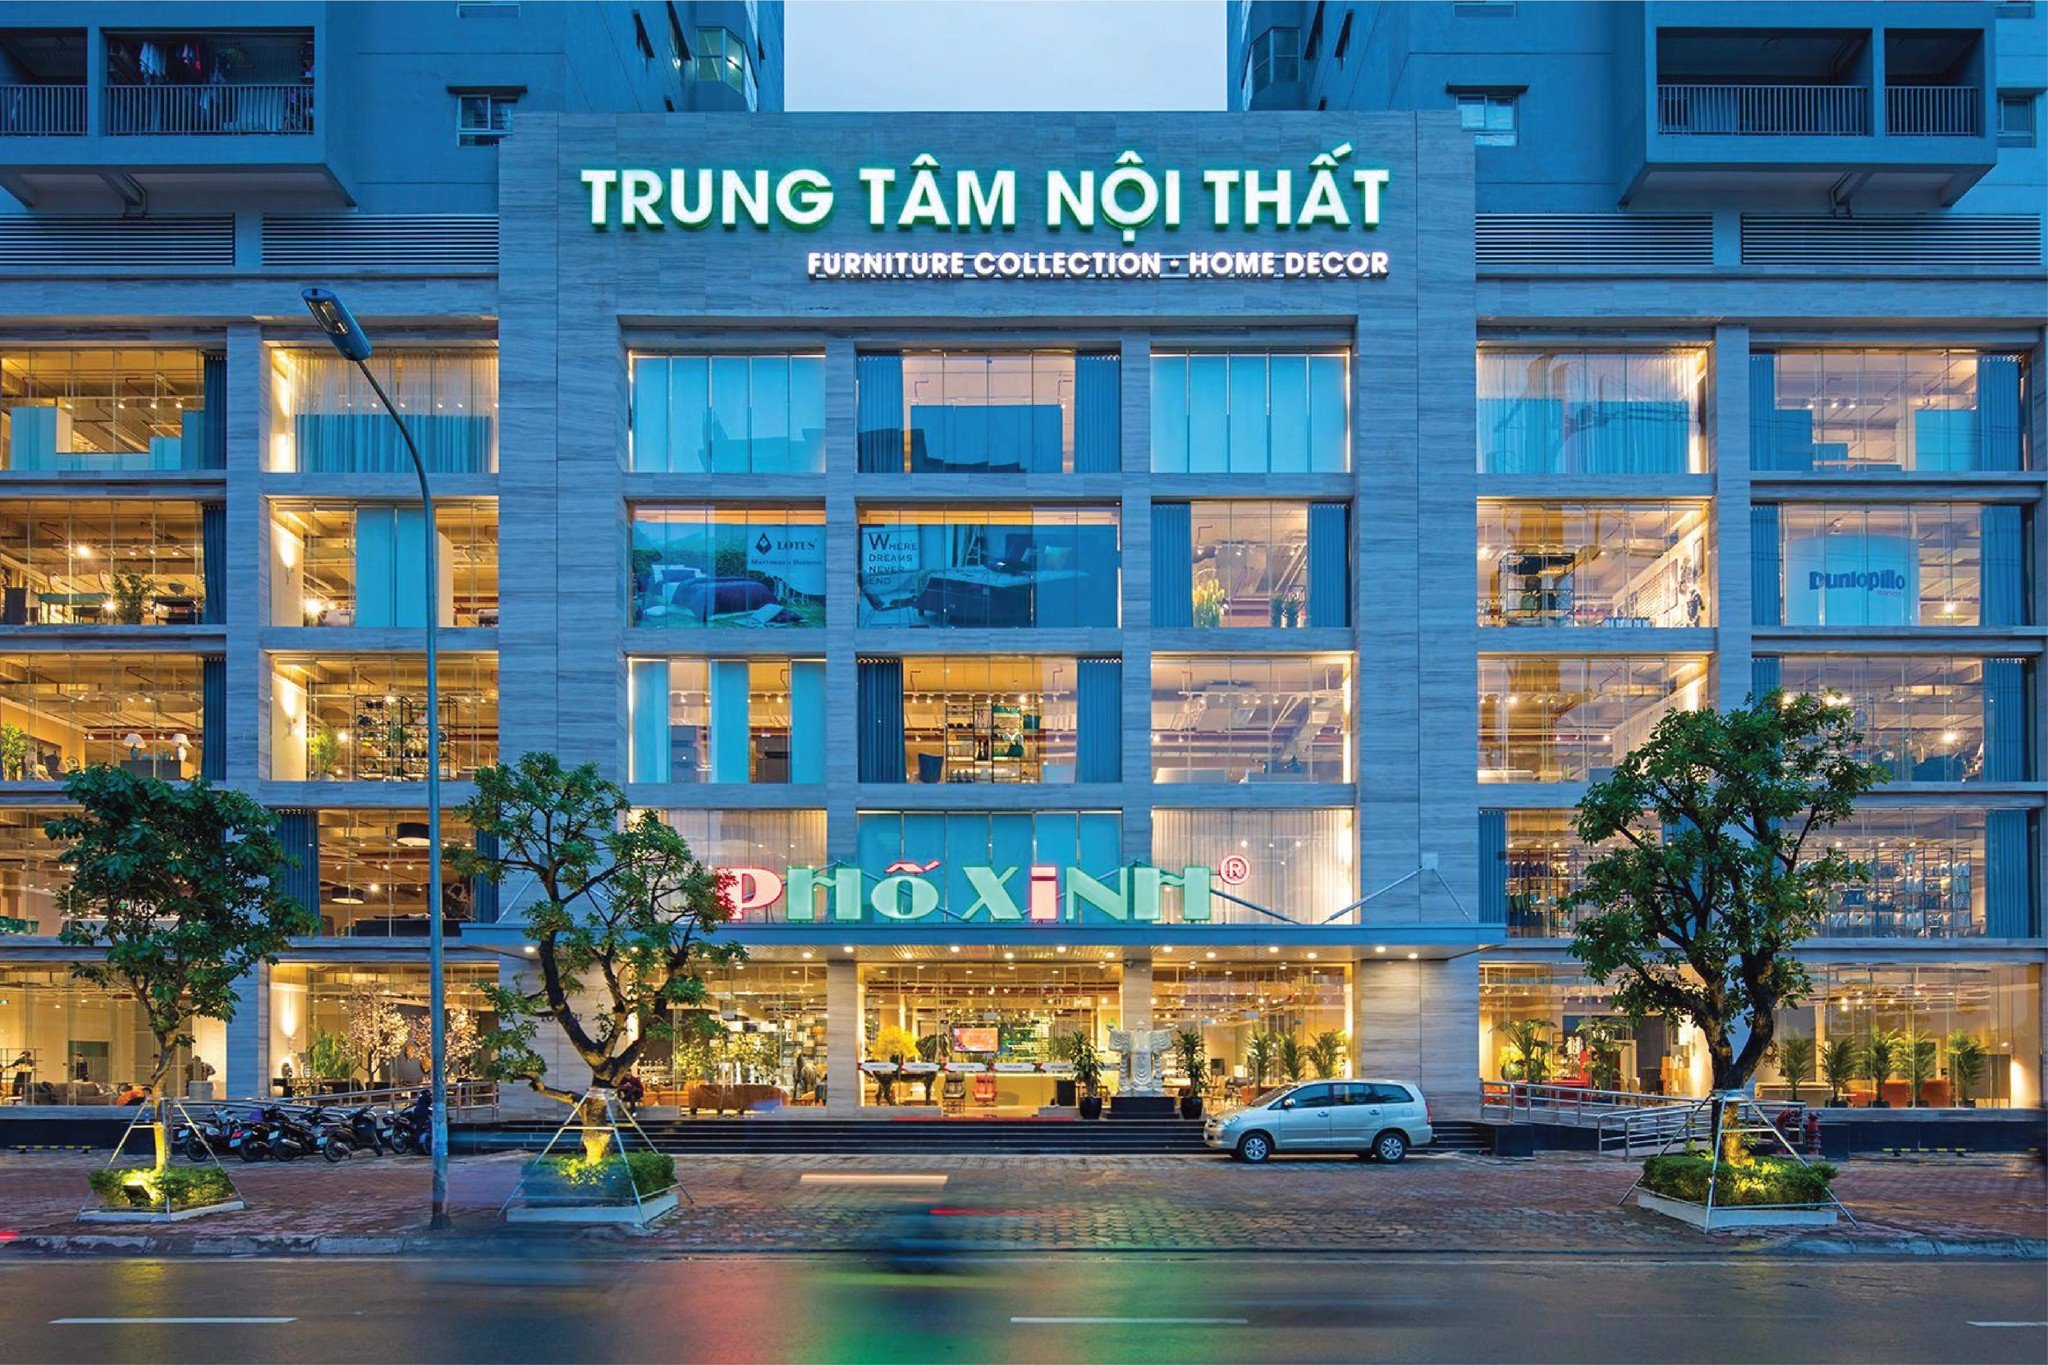 Bật mí địa chỉ bán đồ nội thất HÀNG ĐẦU tại Hà Nội